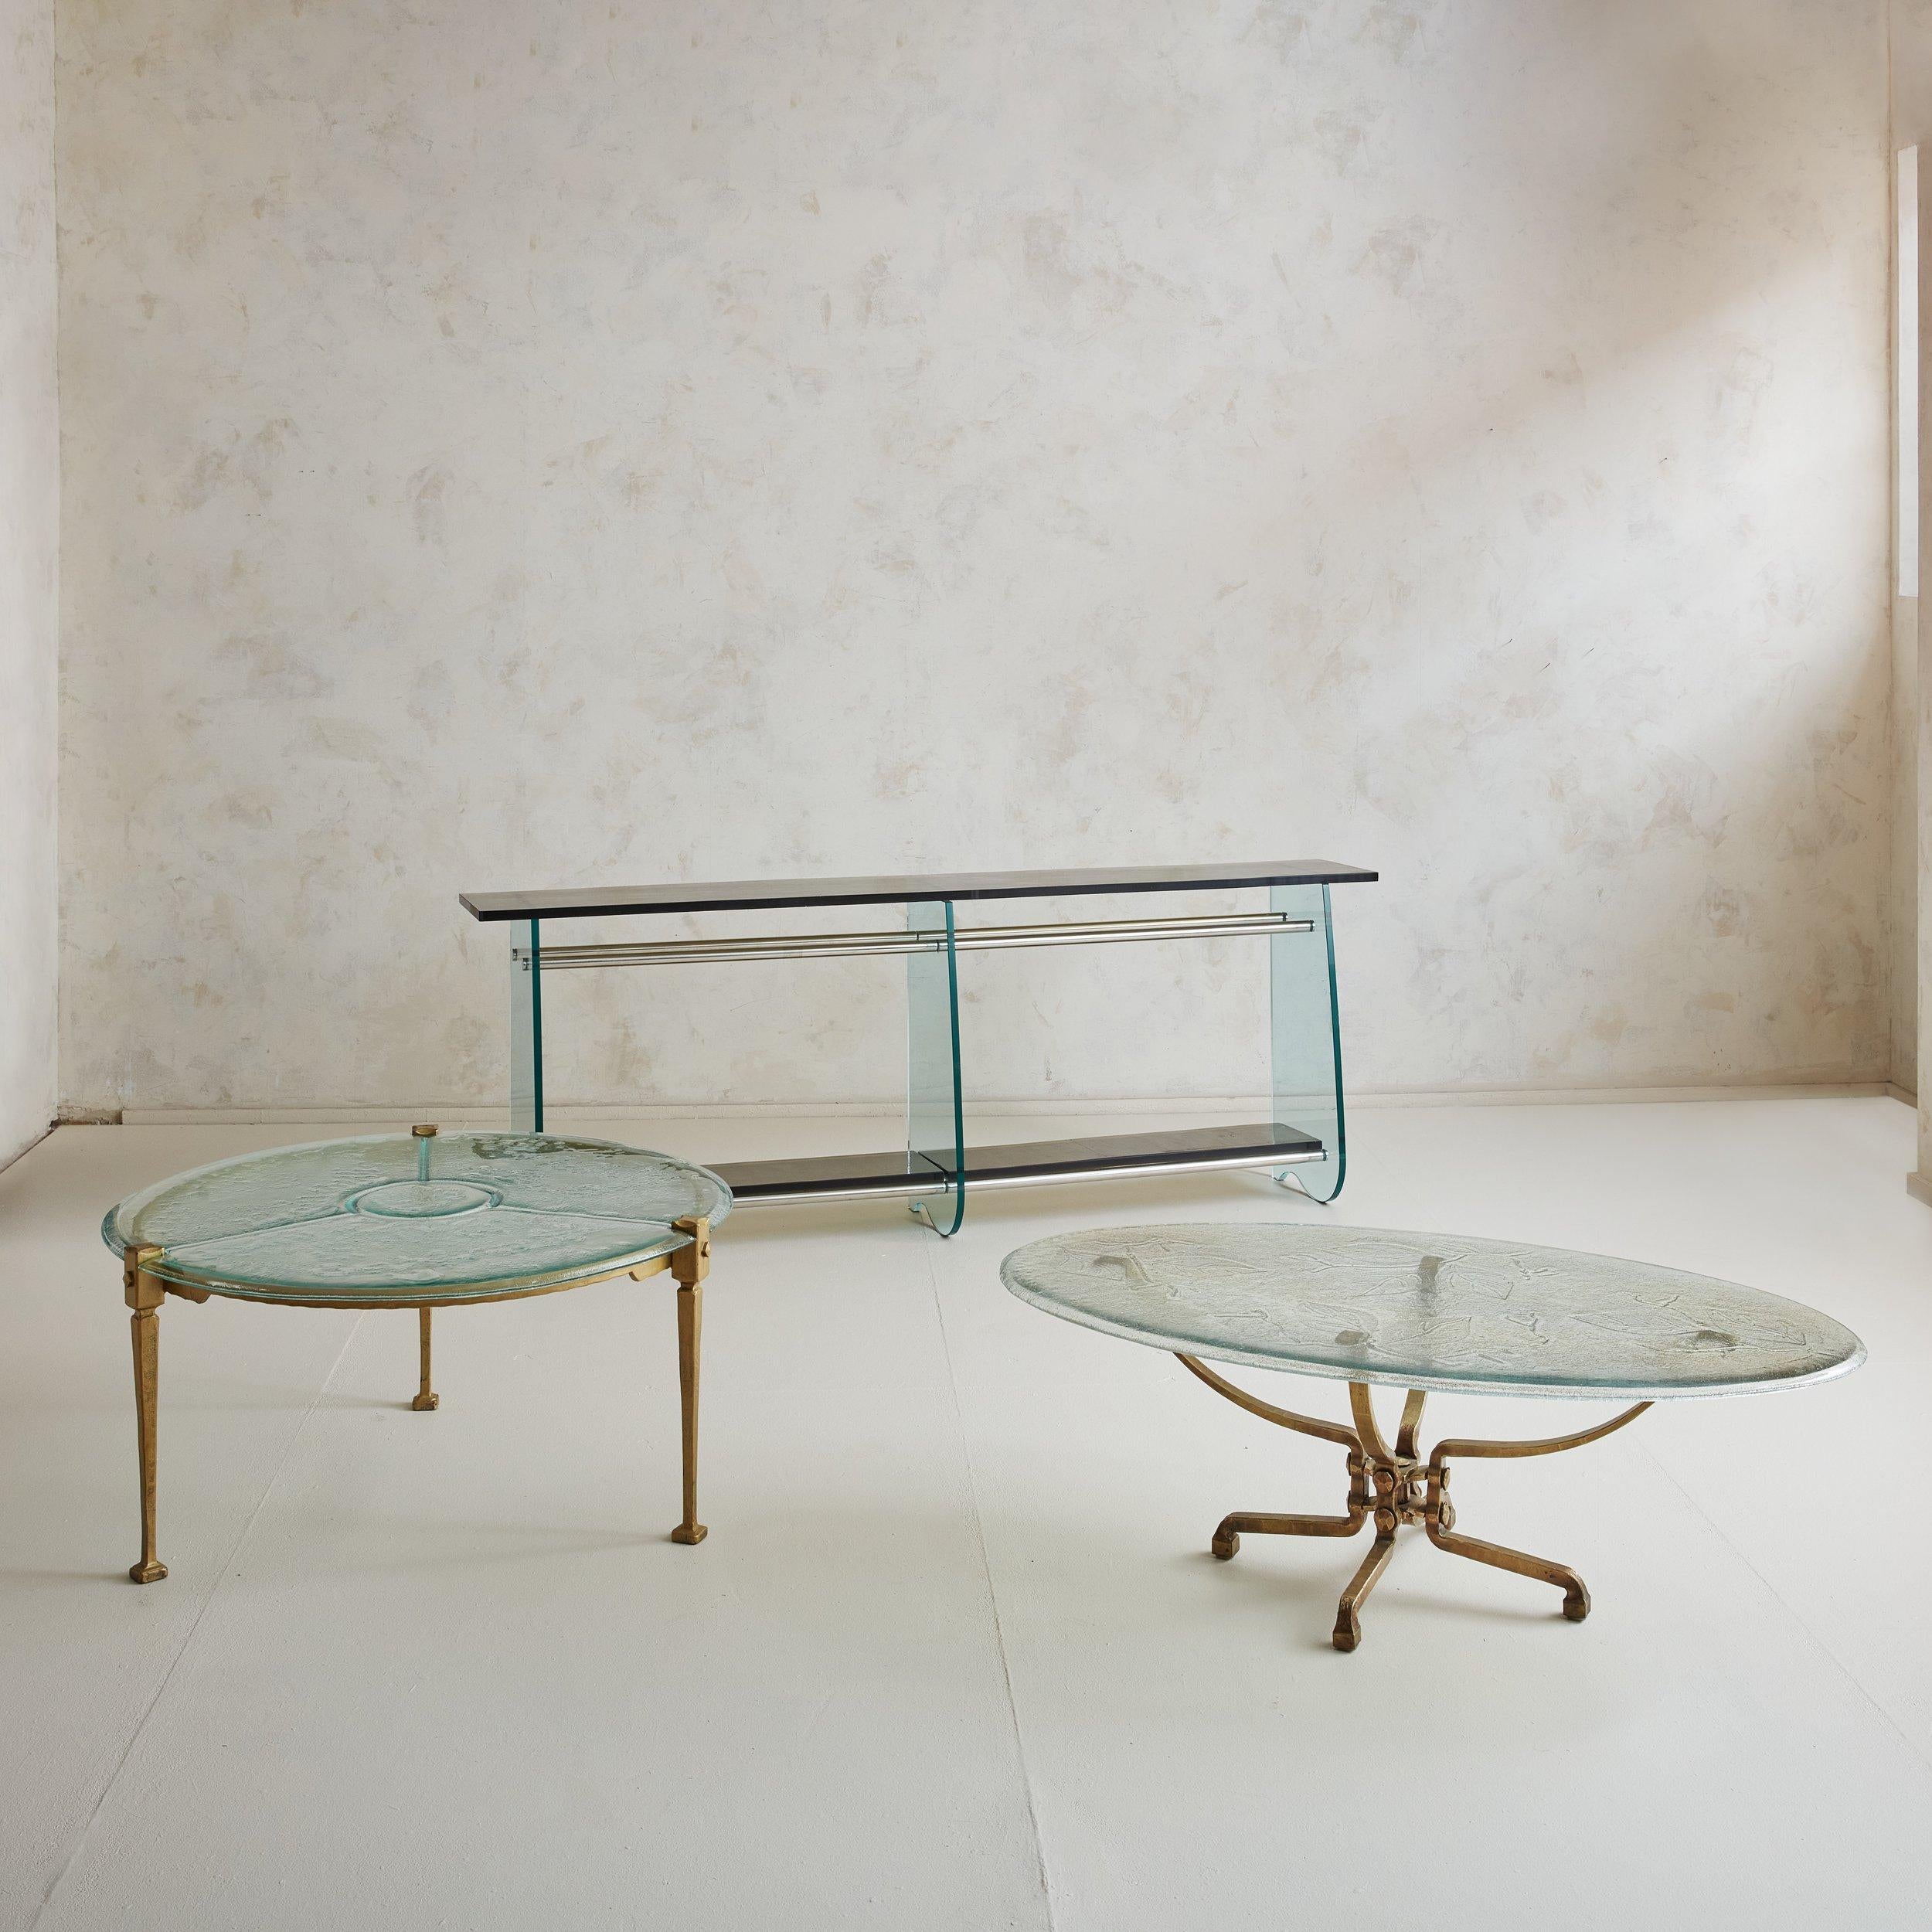 Rare table basse ronde brutaliste en laiton et plateau de verre du designer allemand Lothar Klute. Cette table basse présente une structure en laiton à patine naturelle, trois pieds effilés et des pieds carrés. Un magnifique design géométrique est